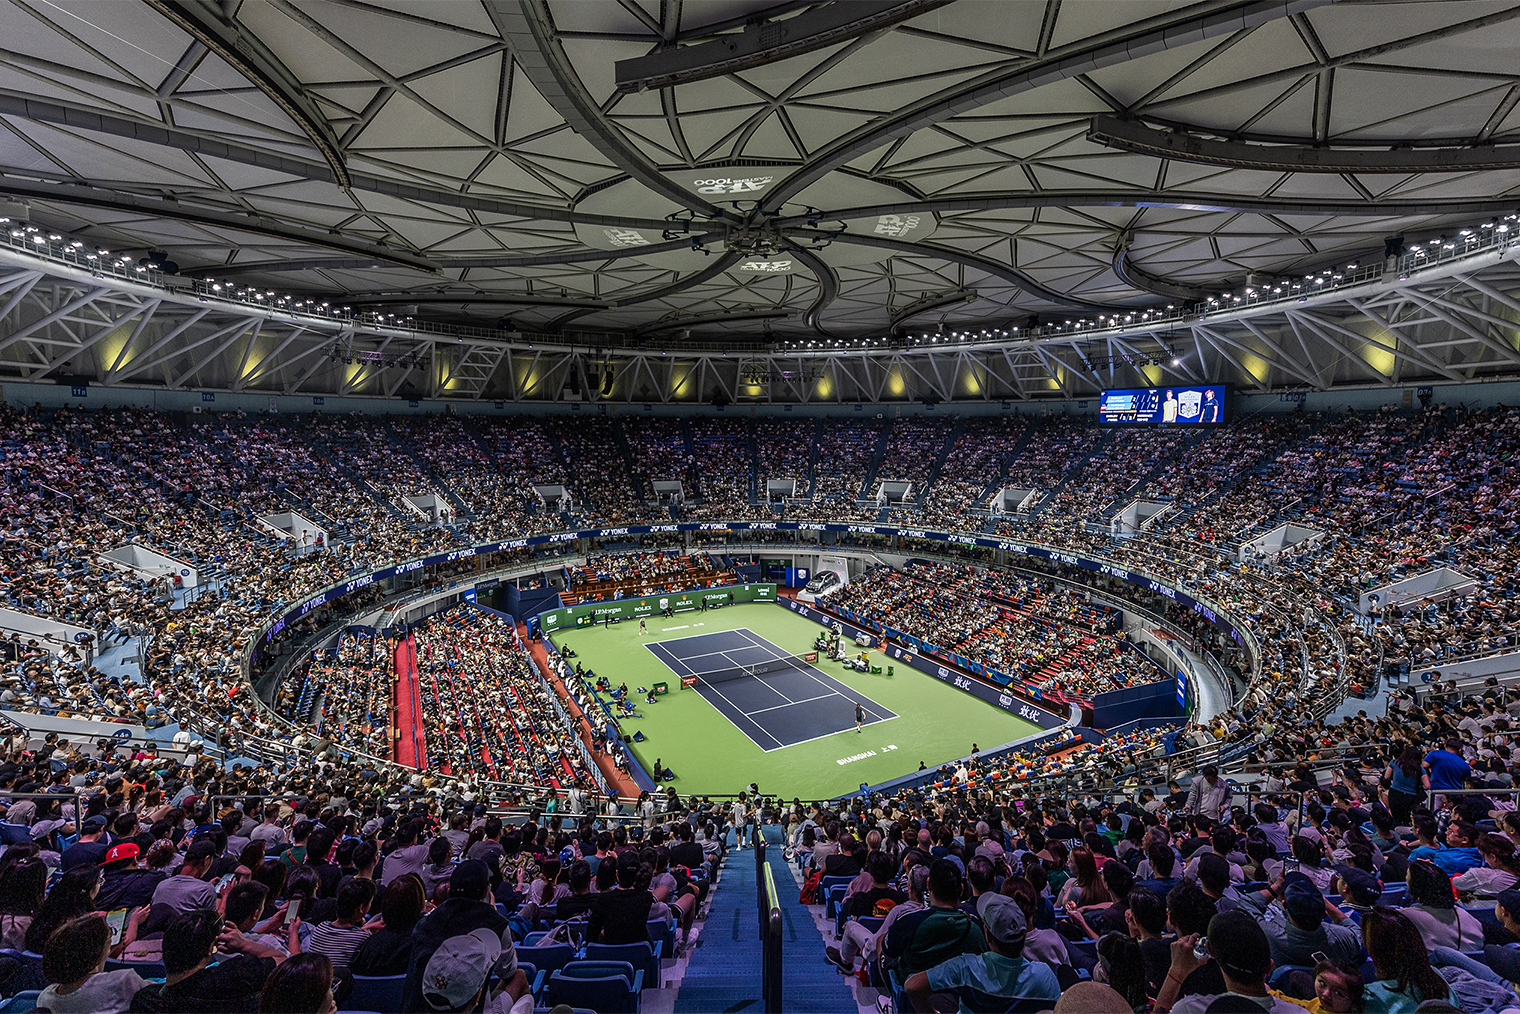 Общий вид Qizhong Forest Sports City Arena в Шанхае. Фотография: Hugo Hu / Getty Images